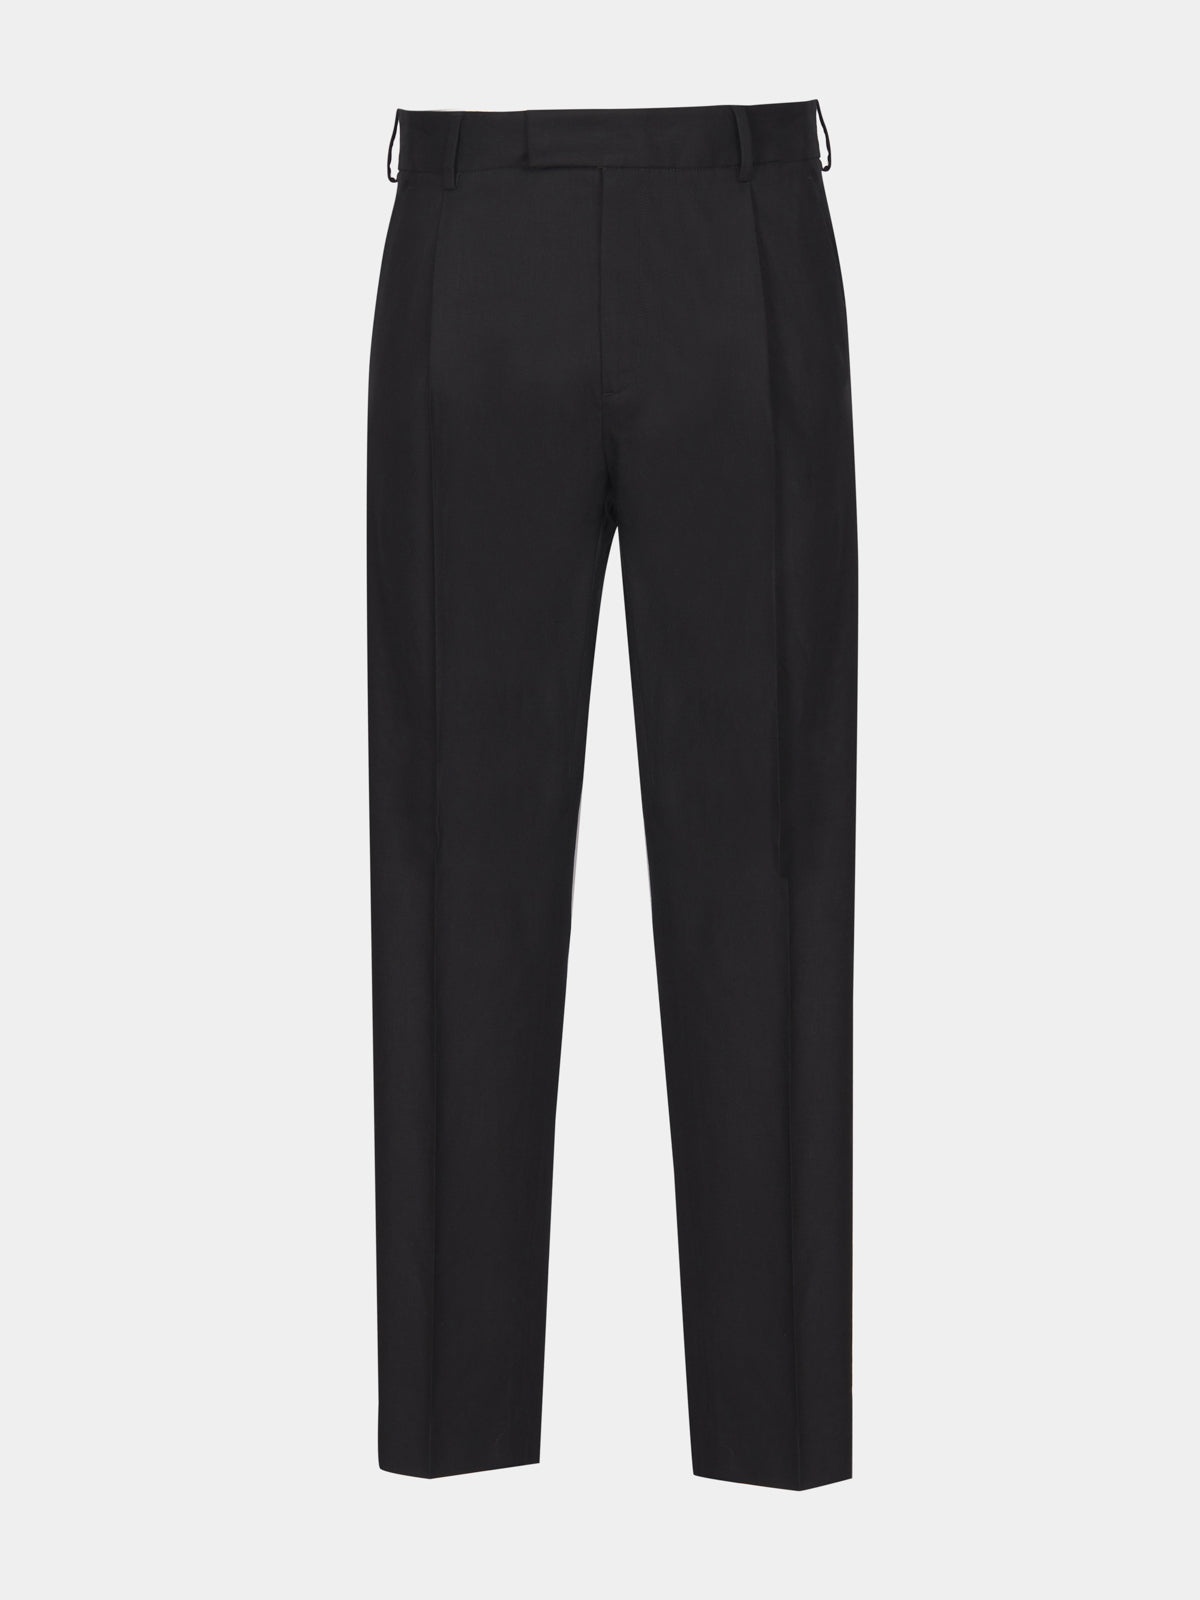 Pantalone con pince in lino nero stretch